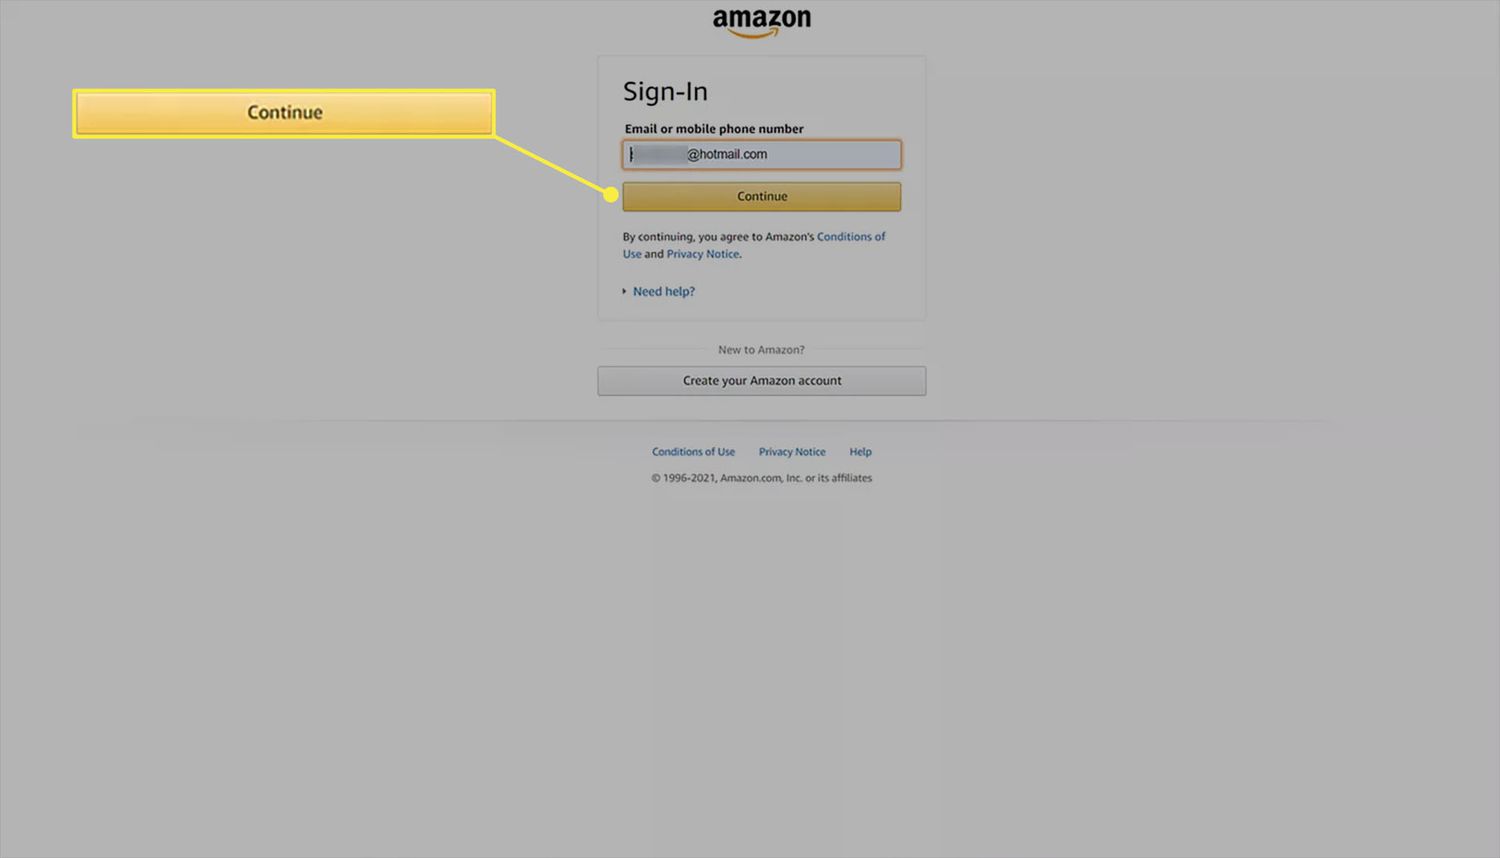 Amazon webbplats inloggningssida med e-post inmatad.